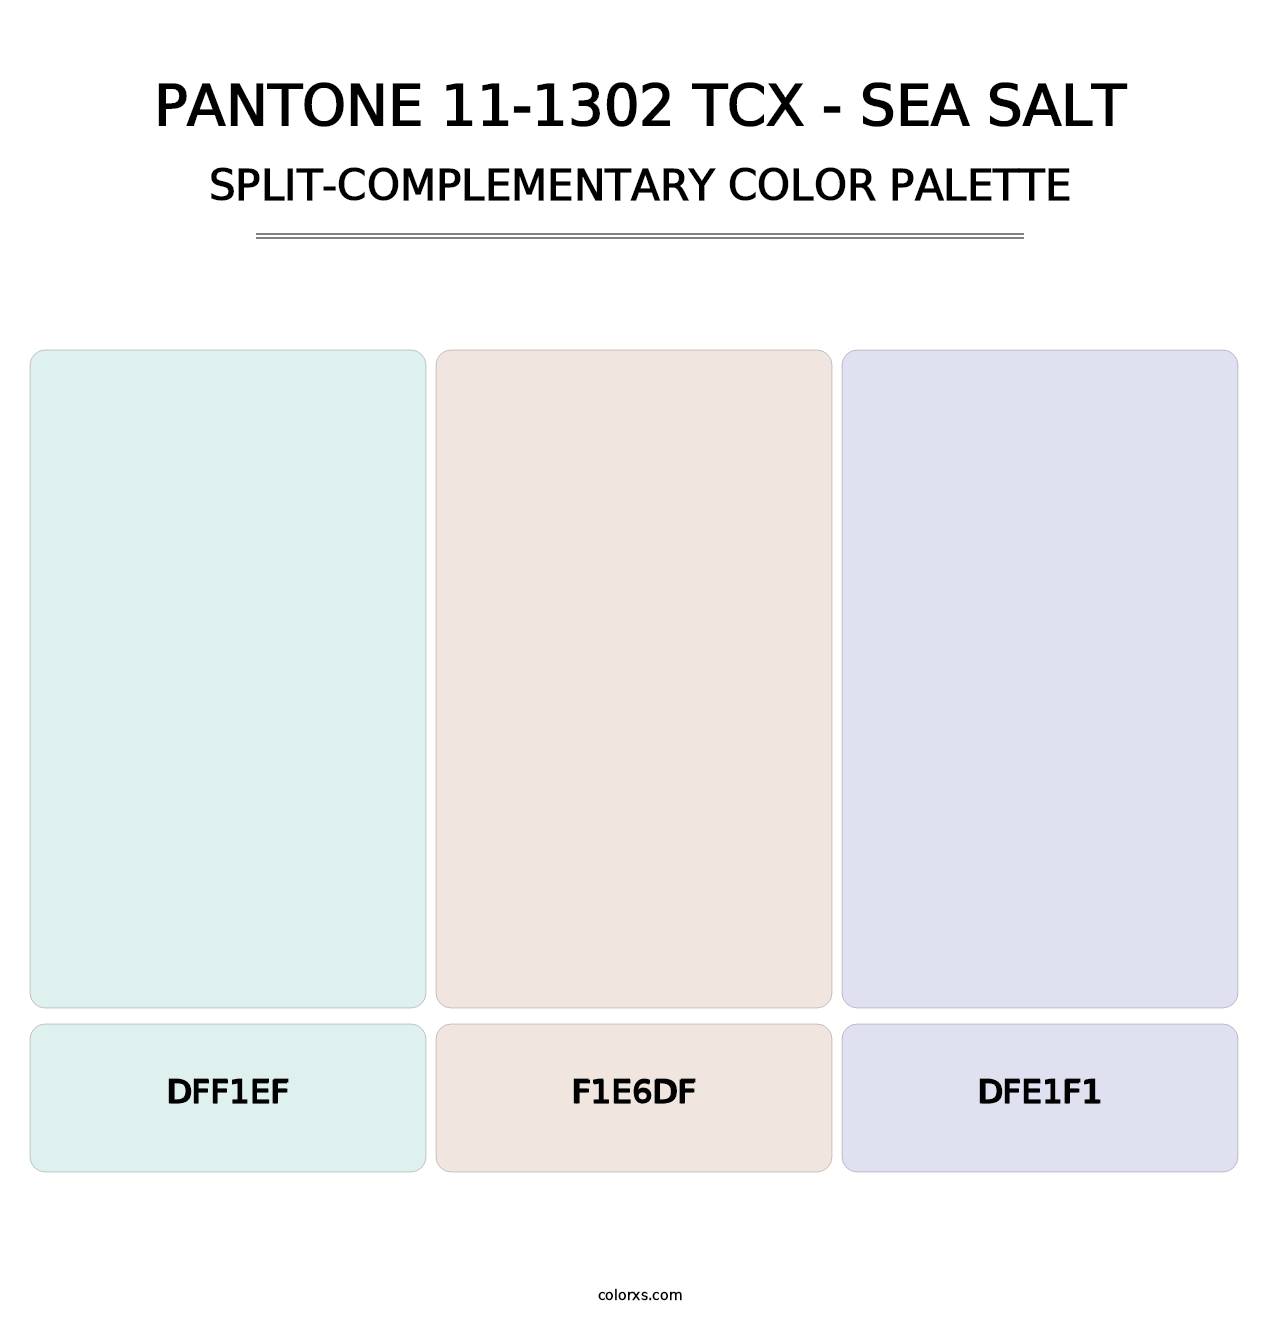 PANTONE 11-1302 TCX - Sea Salt - Split-Complementary Color Palette